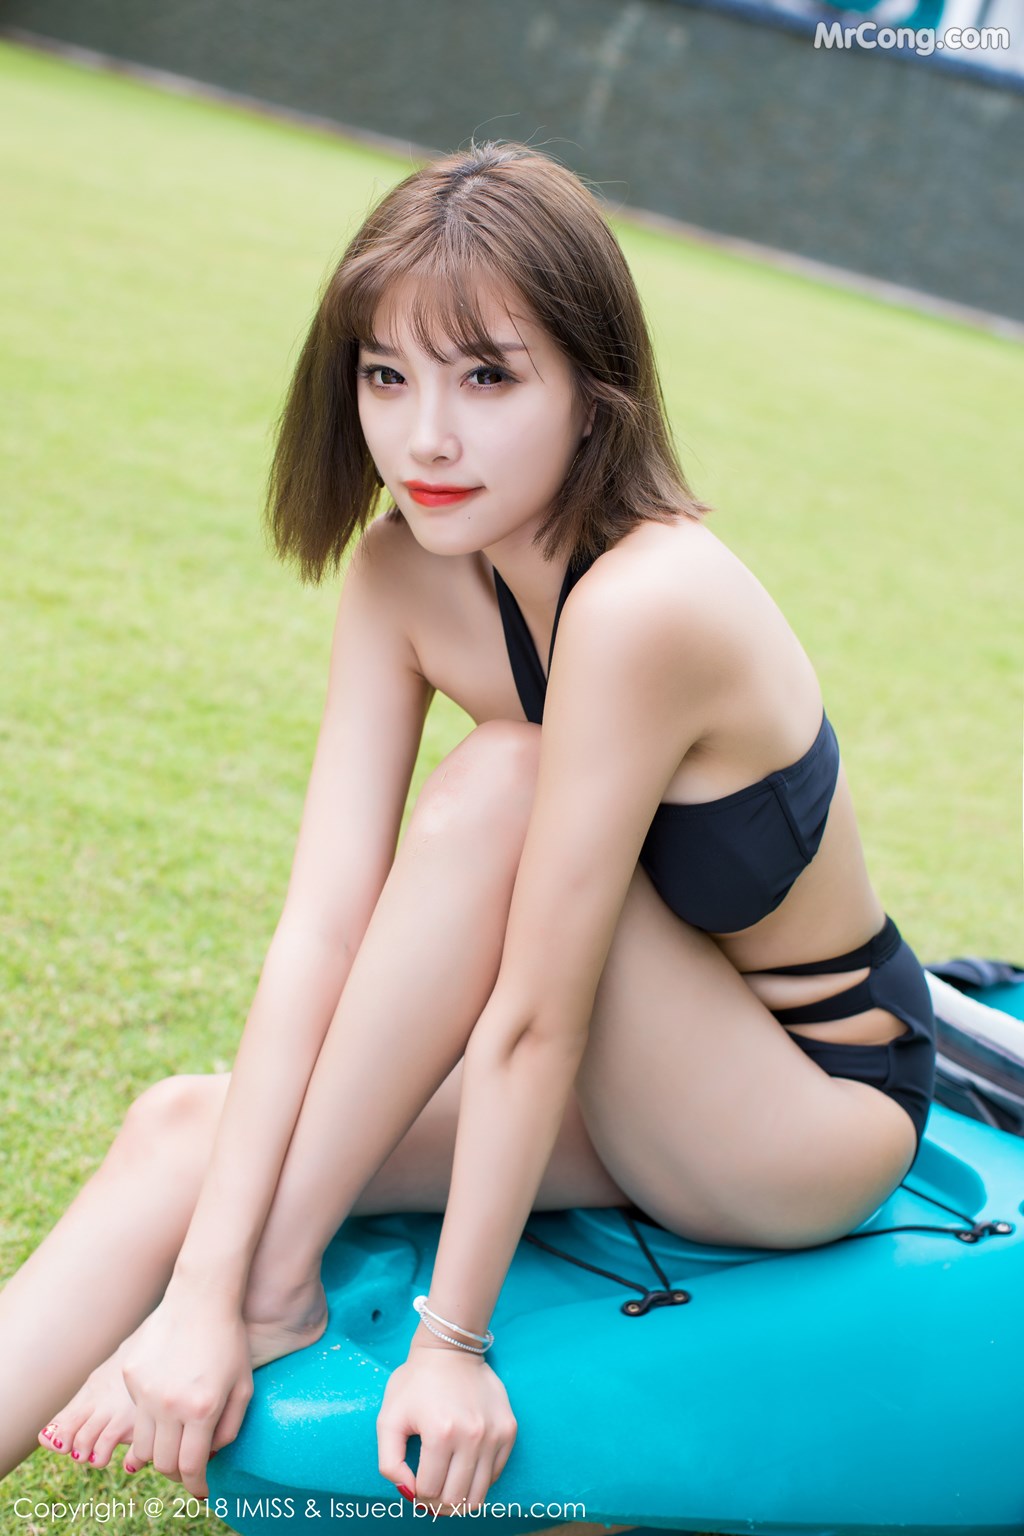 IMISS Vol. 220: Model Yang Chen Chen (杨晨晨 sugar) (37 photos)